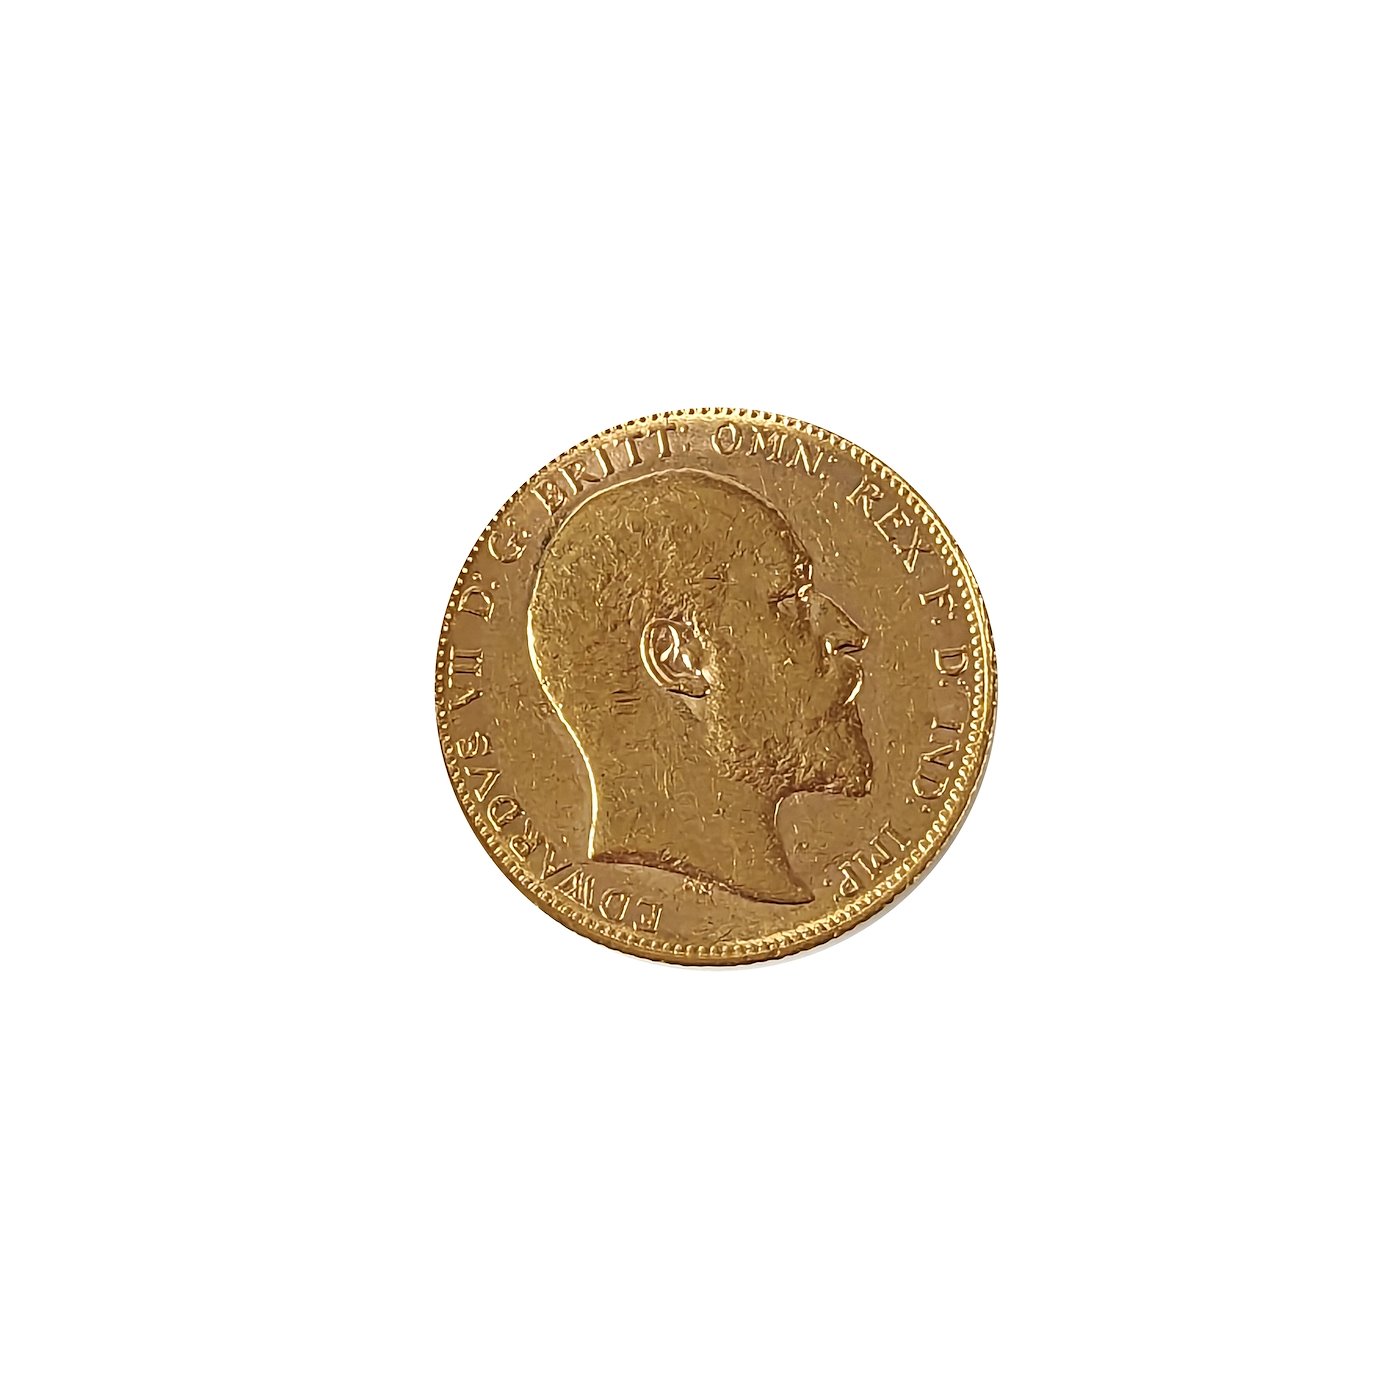 .. - Velká Británie zlatý Sovereign EDWARD VII. 1905, zlato 916,7/1000, hrubá hmotnost 7,99g